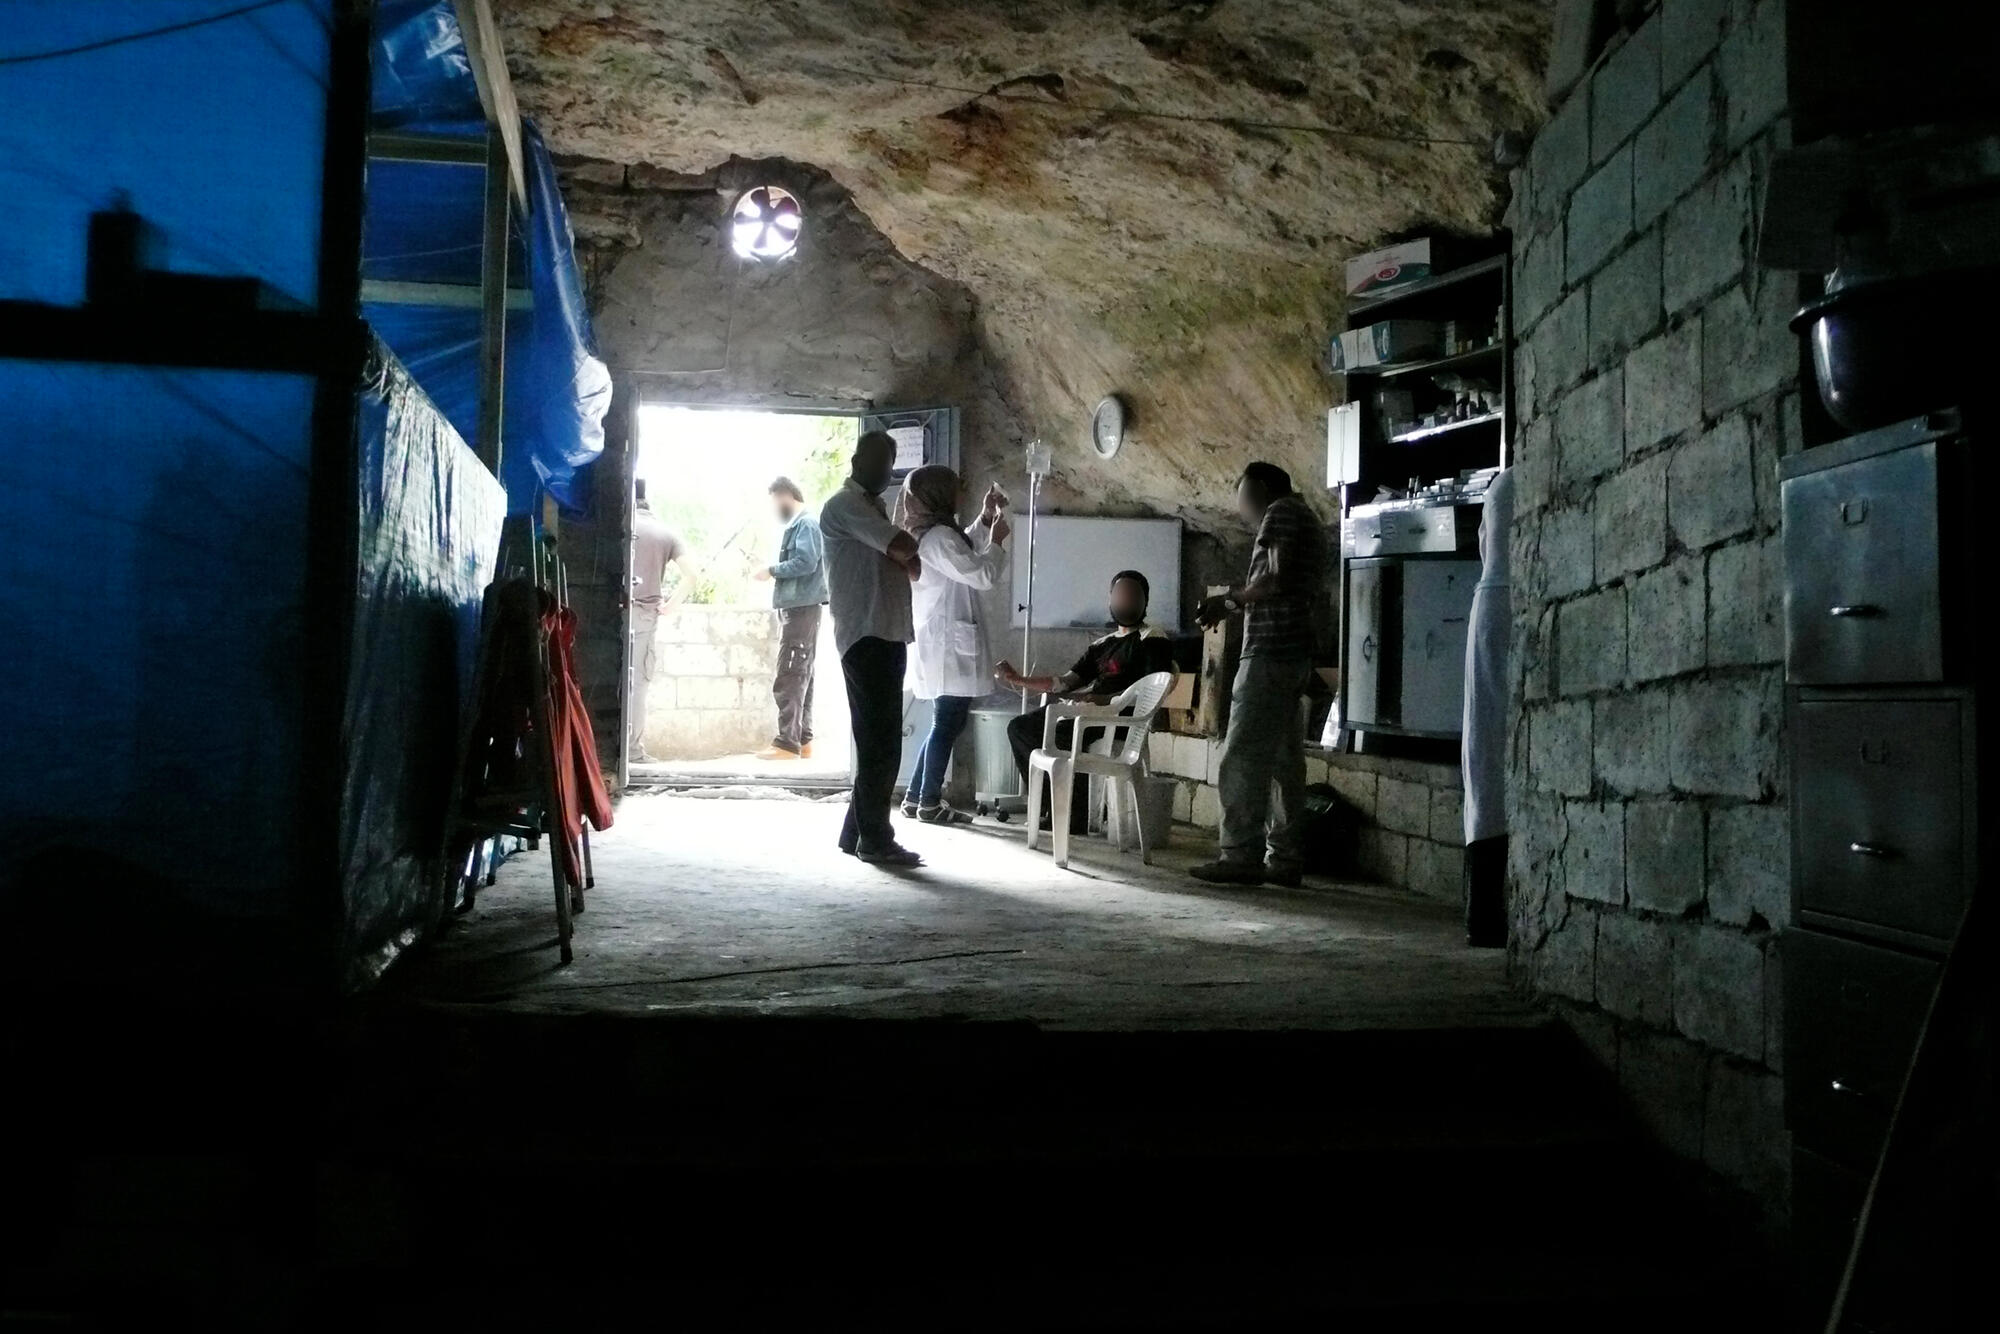 2012年8月——洞穴變成醫院。無國界醫生在敘利亞與土耳其接壤的邊界地區，將一個曾作為蔬果和燃料儲藏庫的洞穴改建成醫院。儘管在後勤和醫療方面有重重困難，無國界醫生團隊還是成立了一個適合提供急診和創傷手術的無菌手術室。©MSF